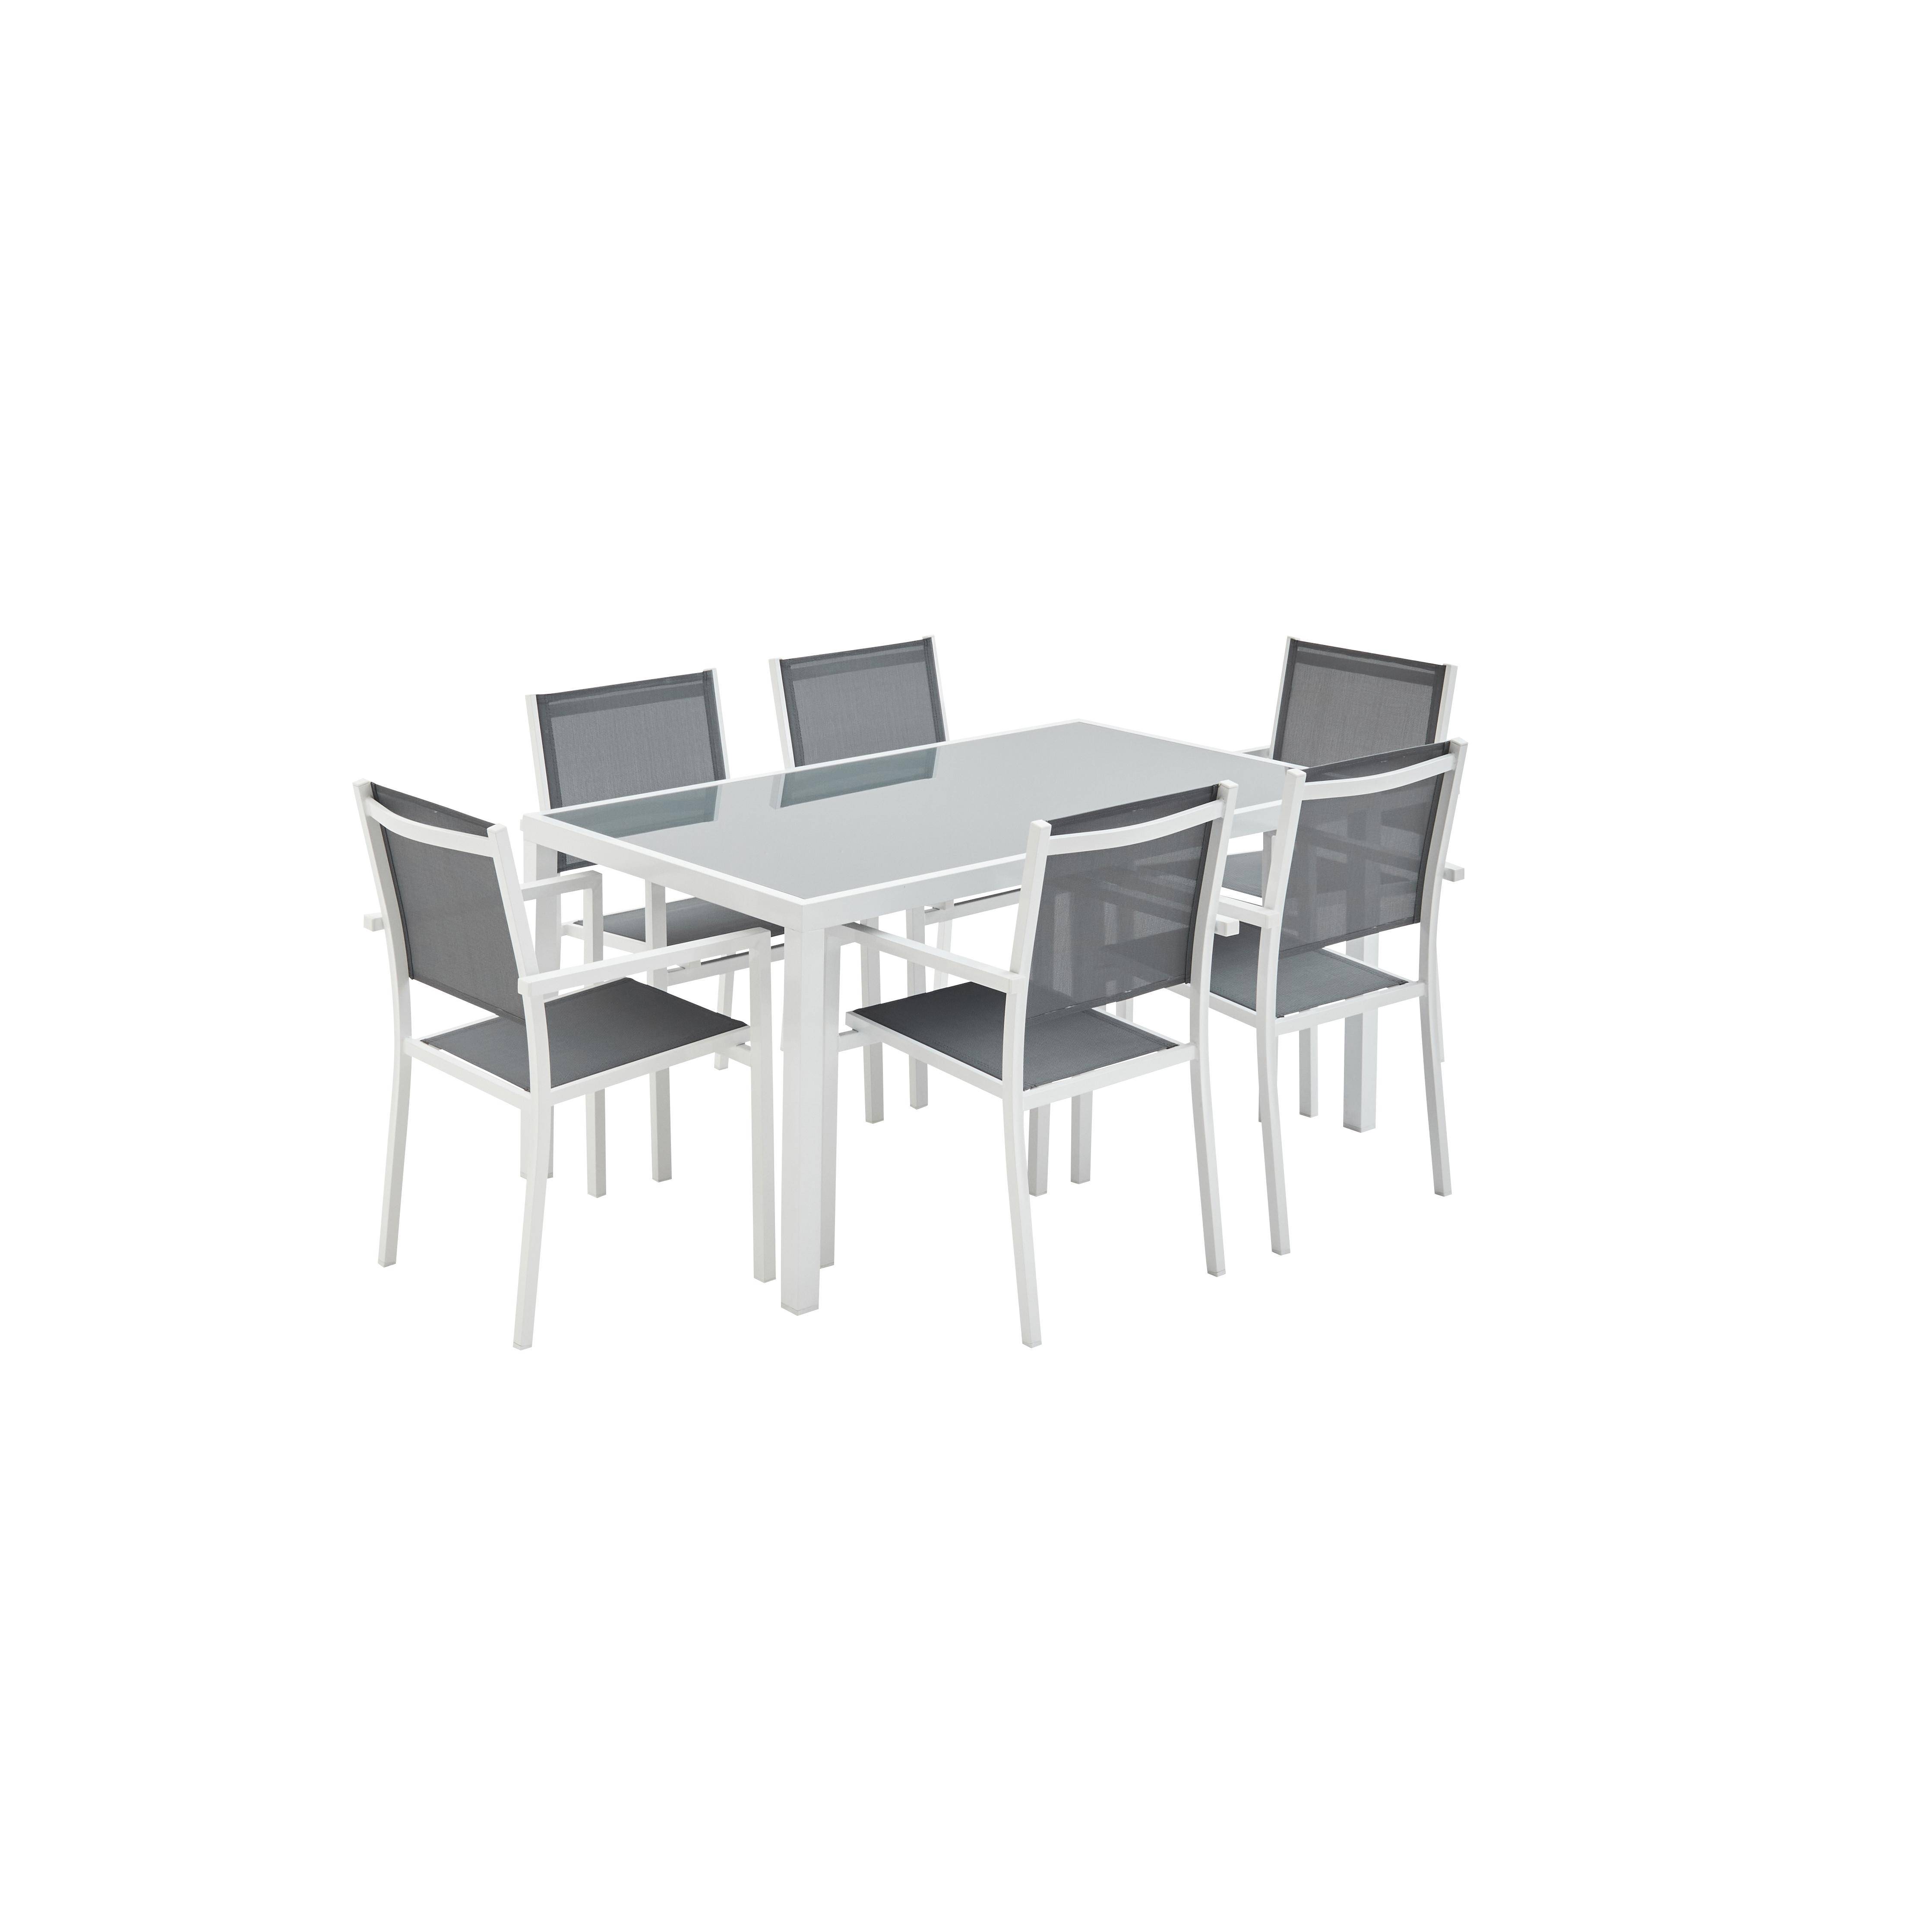 Set da giardino in alluminio e textilene - Capua - Bianco, Grigio - 1 grande tavolo rettangolare, 6 poltrone impilabili Photo2